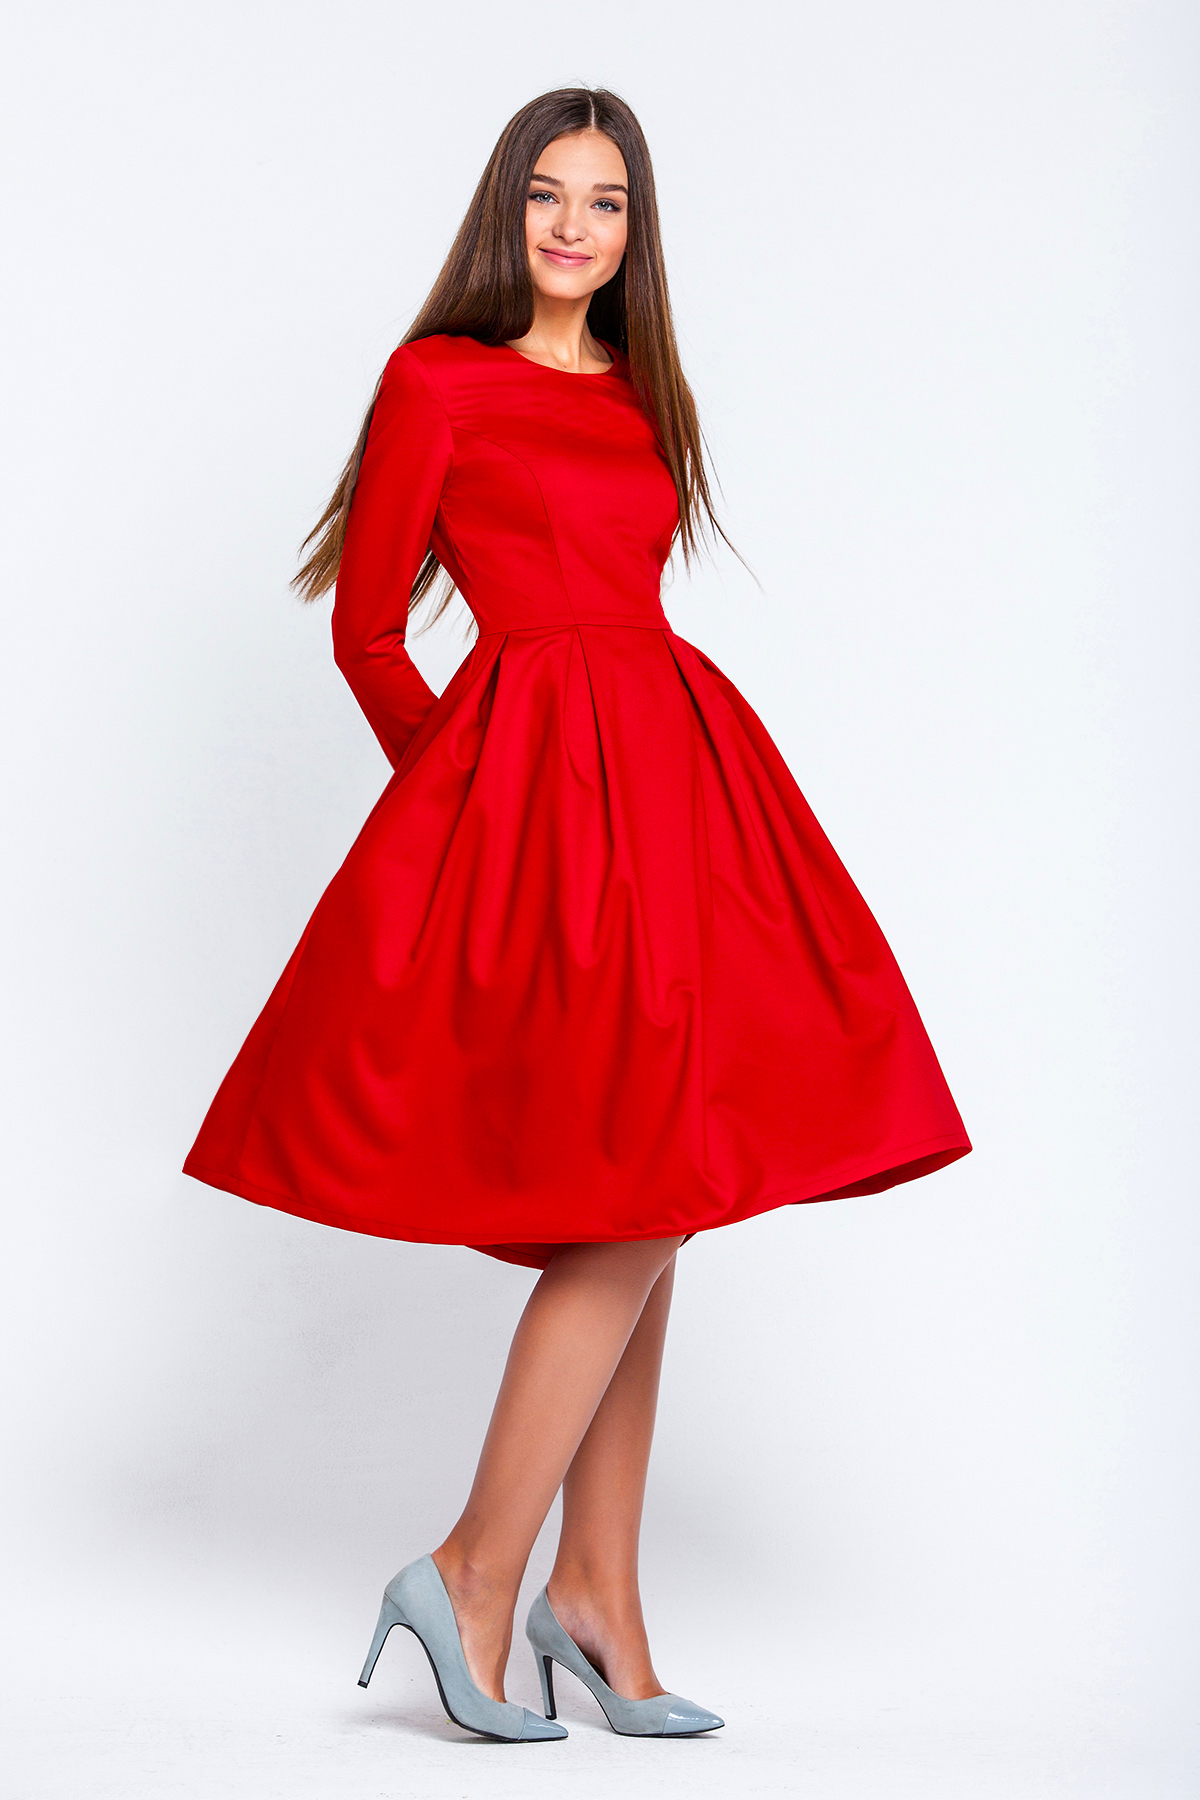 Платья красные с пышной юбкой